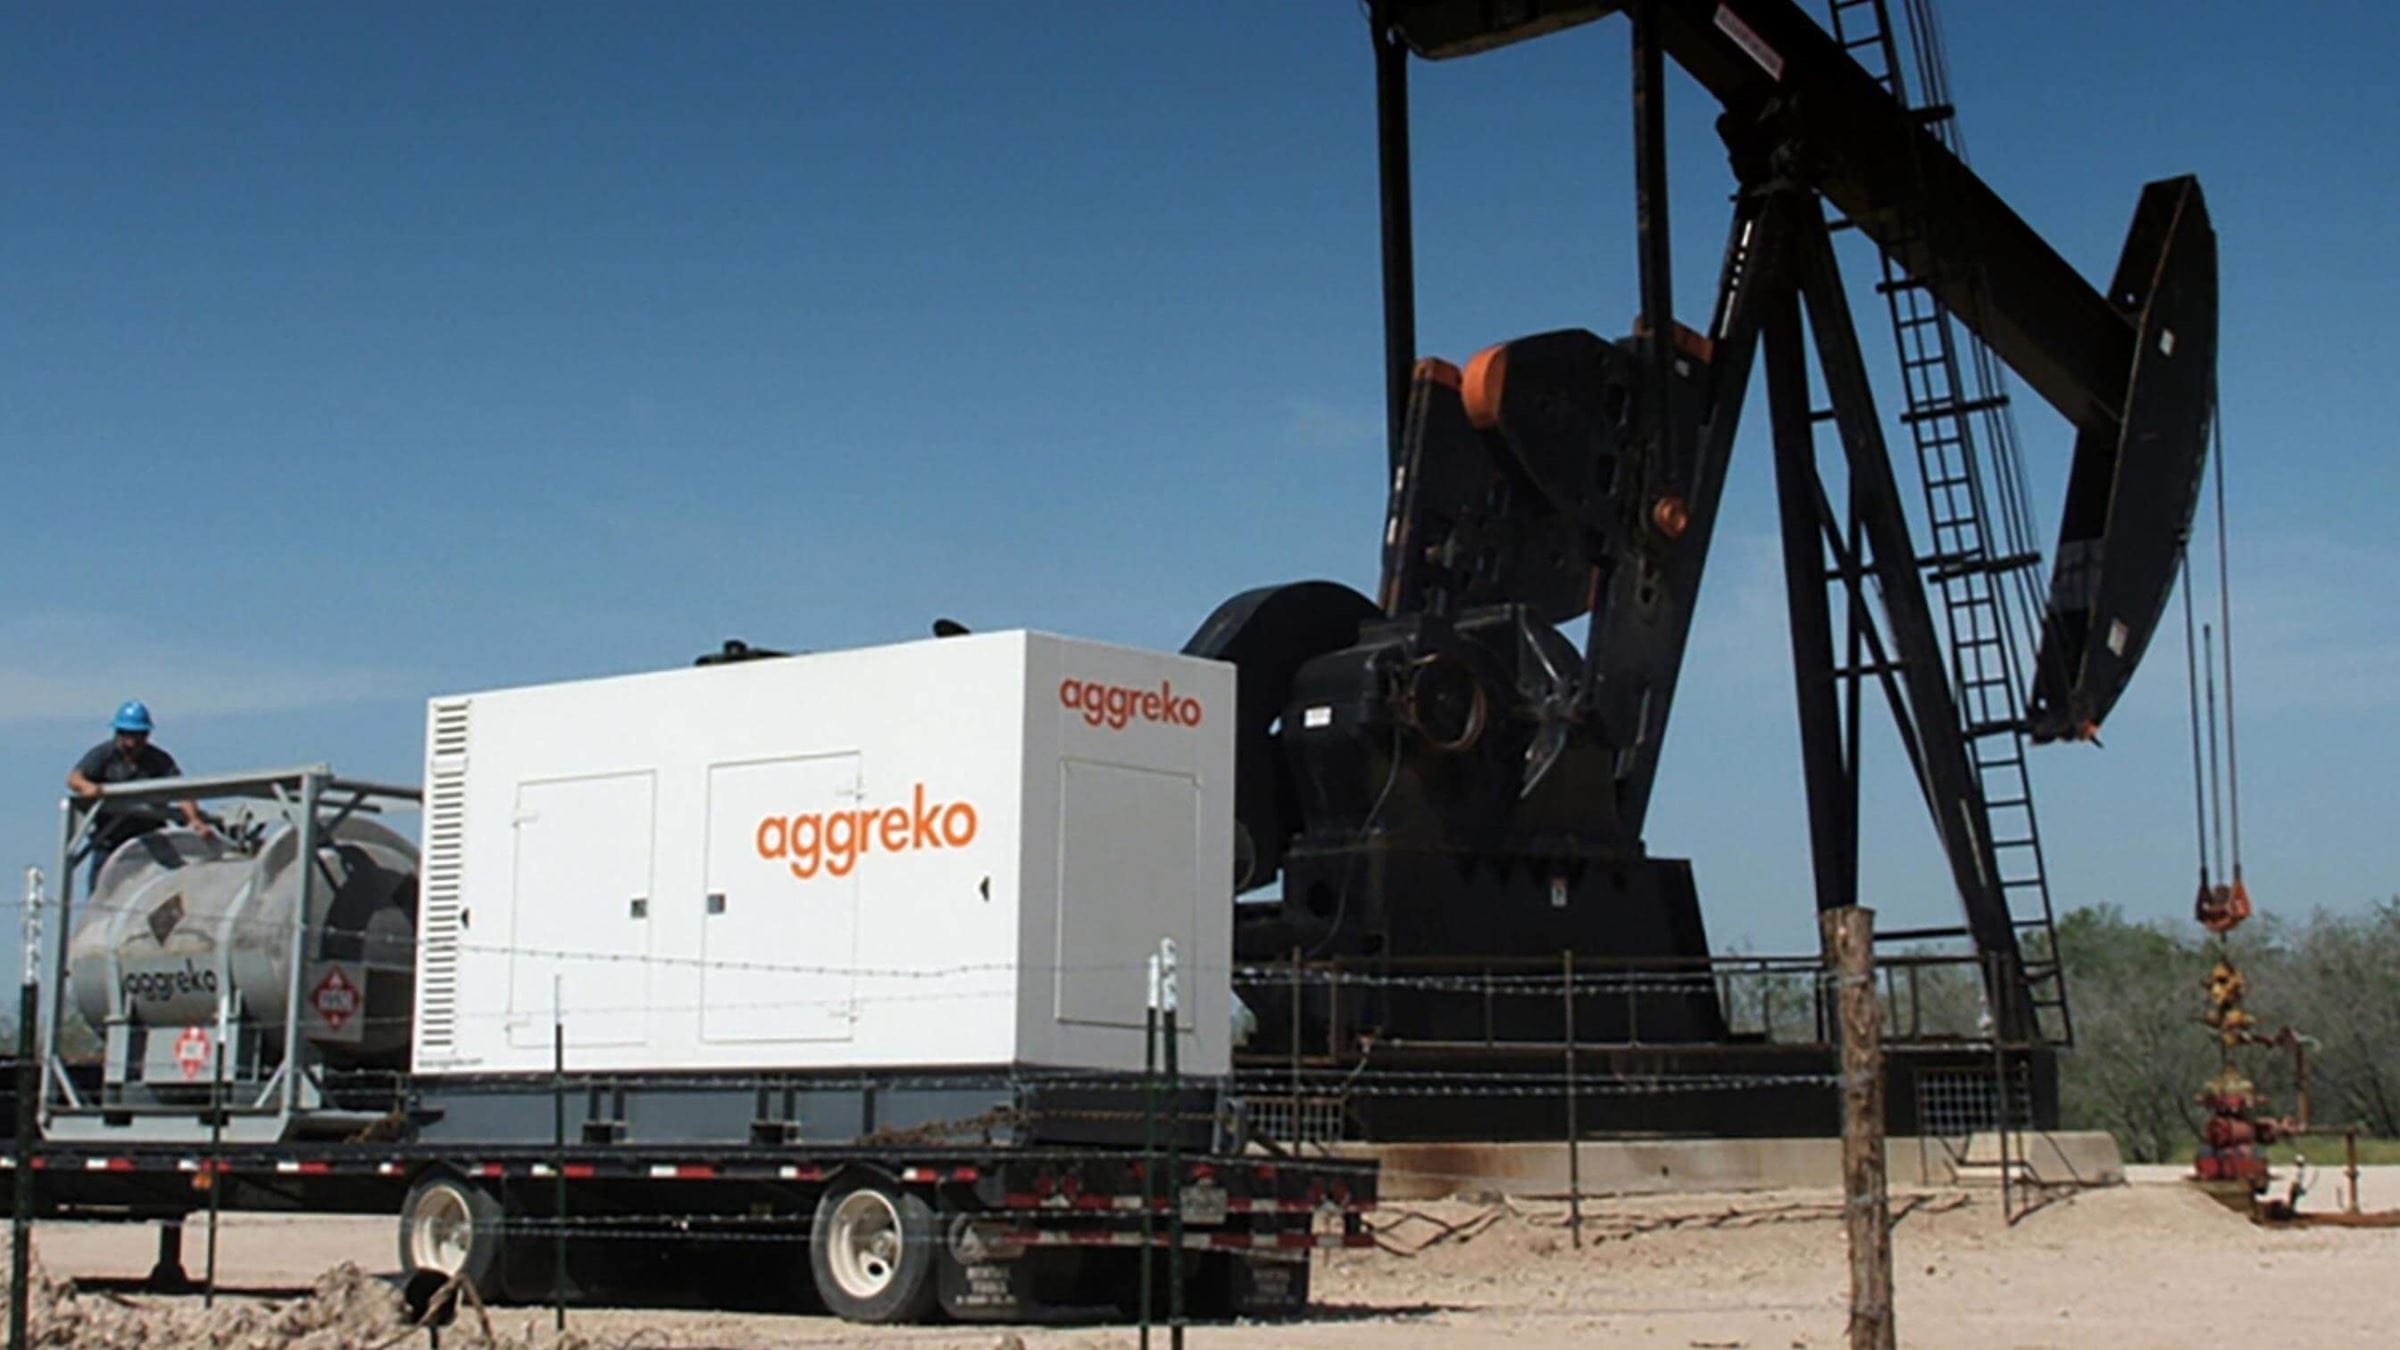 Generatore Aggreko presso un pozzo petrolifero